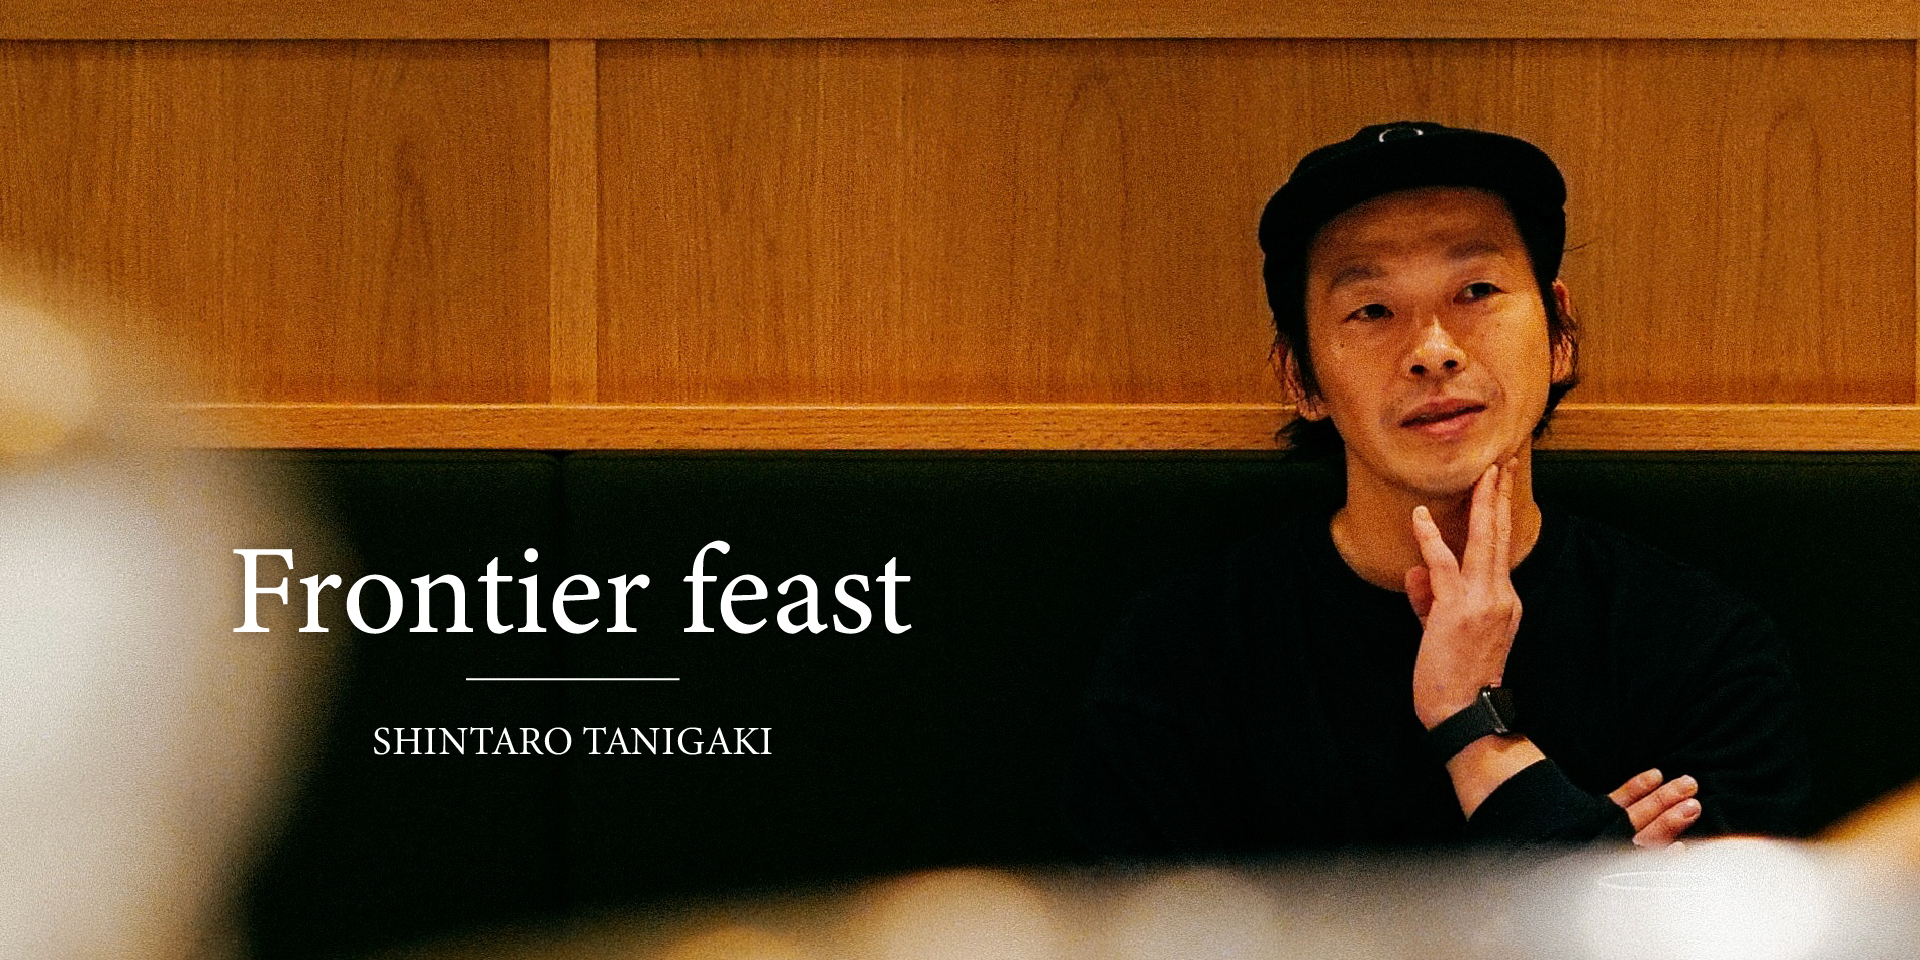 Frontier feast SHINTARO TANIGAKI